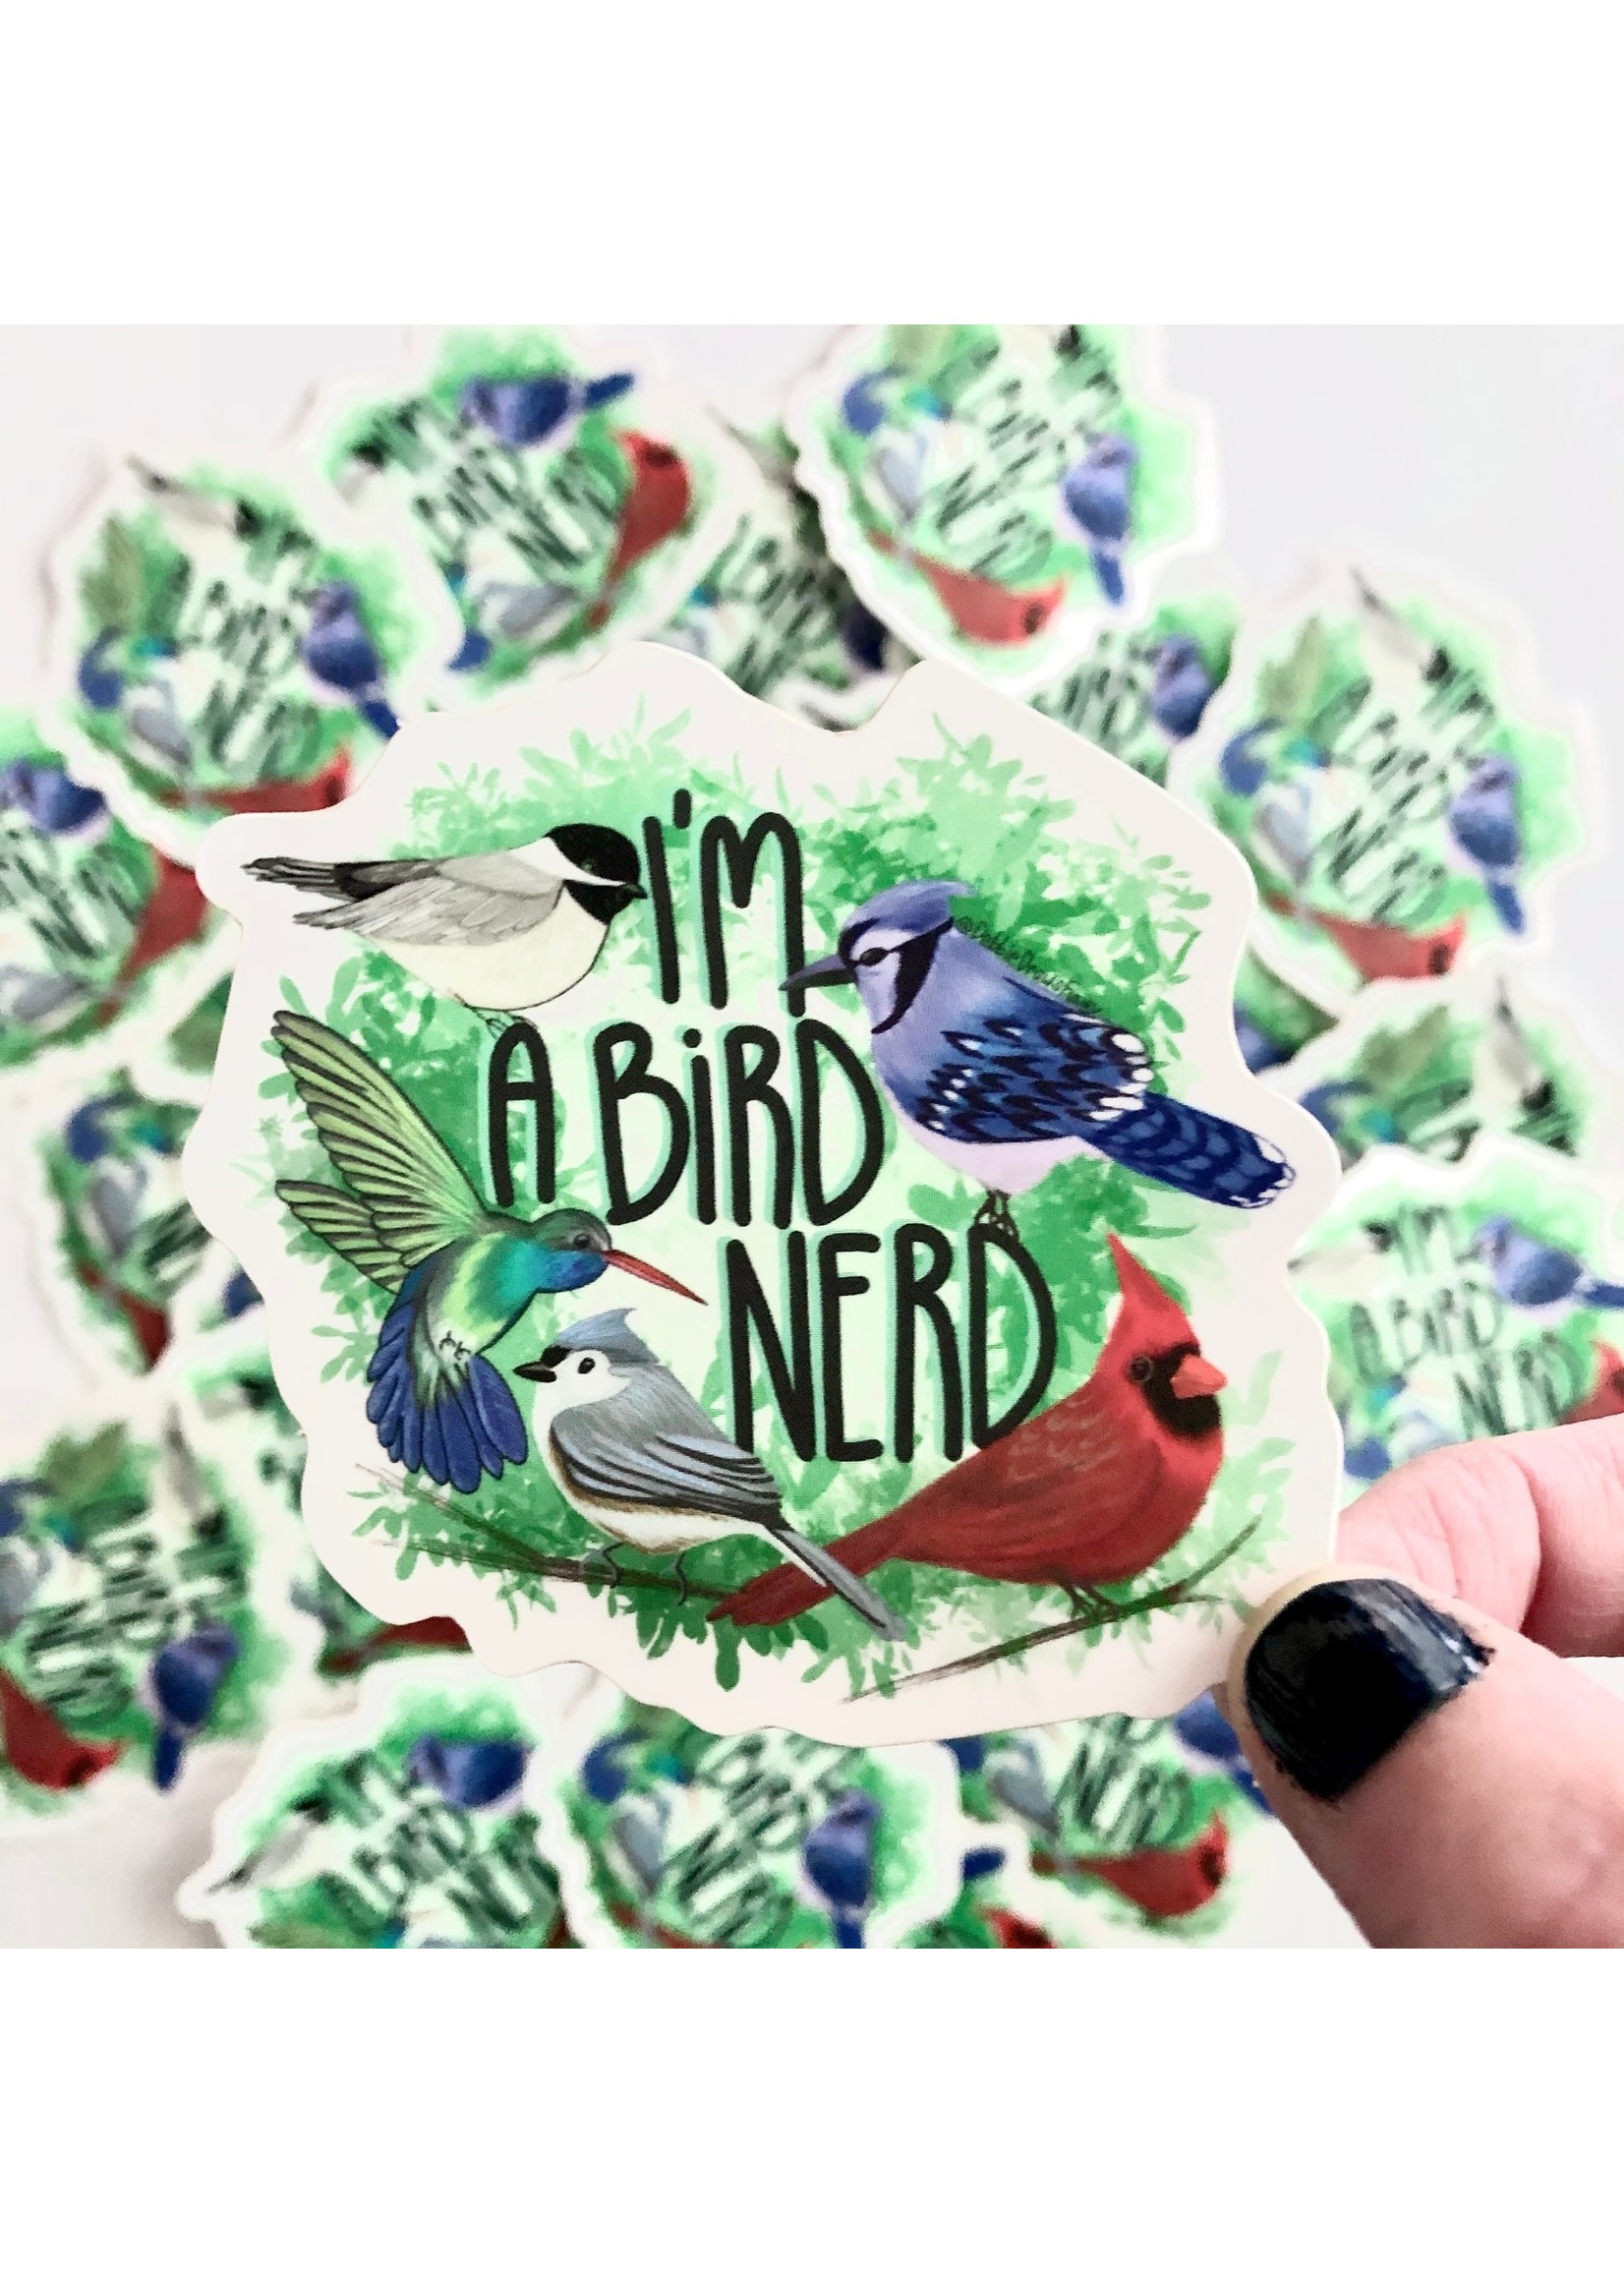 Debbie Draws Funny Bird Nerd Sticker